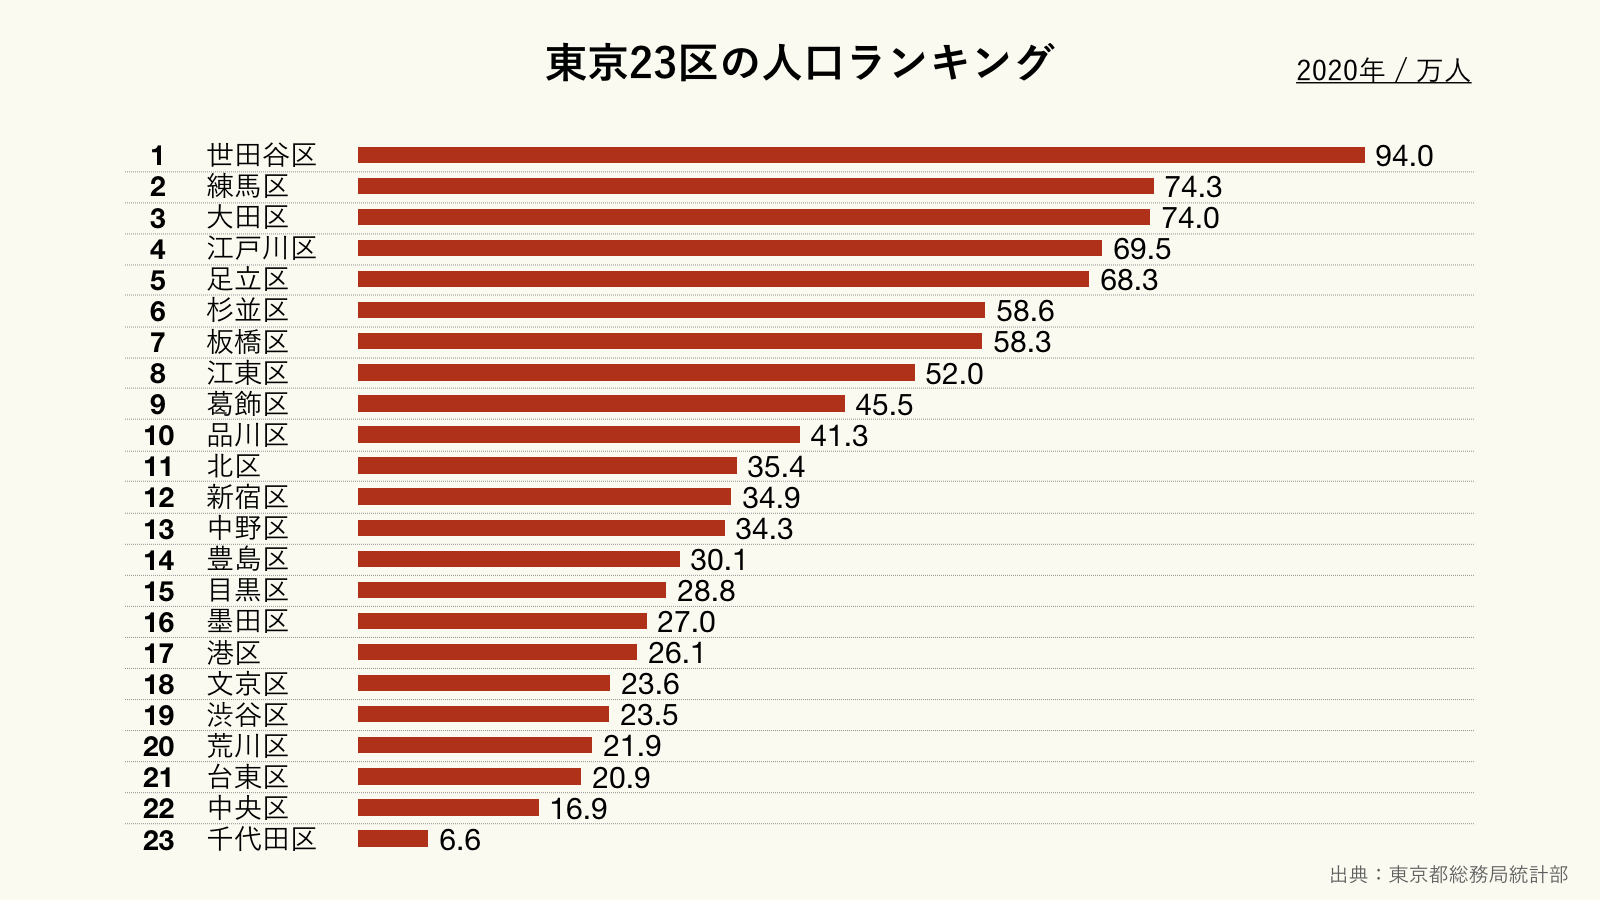 東京23区の人口ランキング（クリーム）